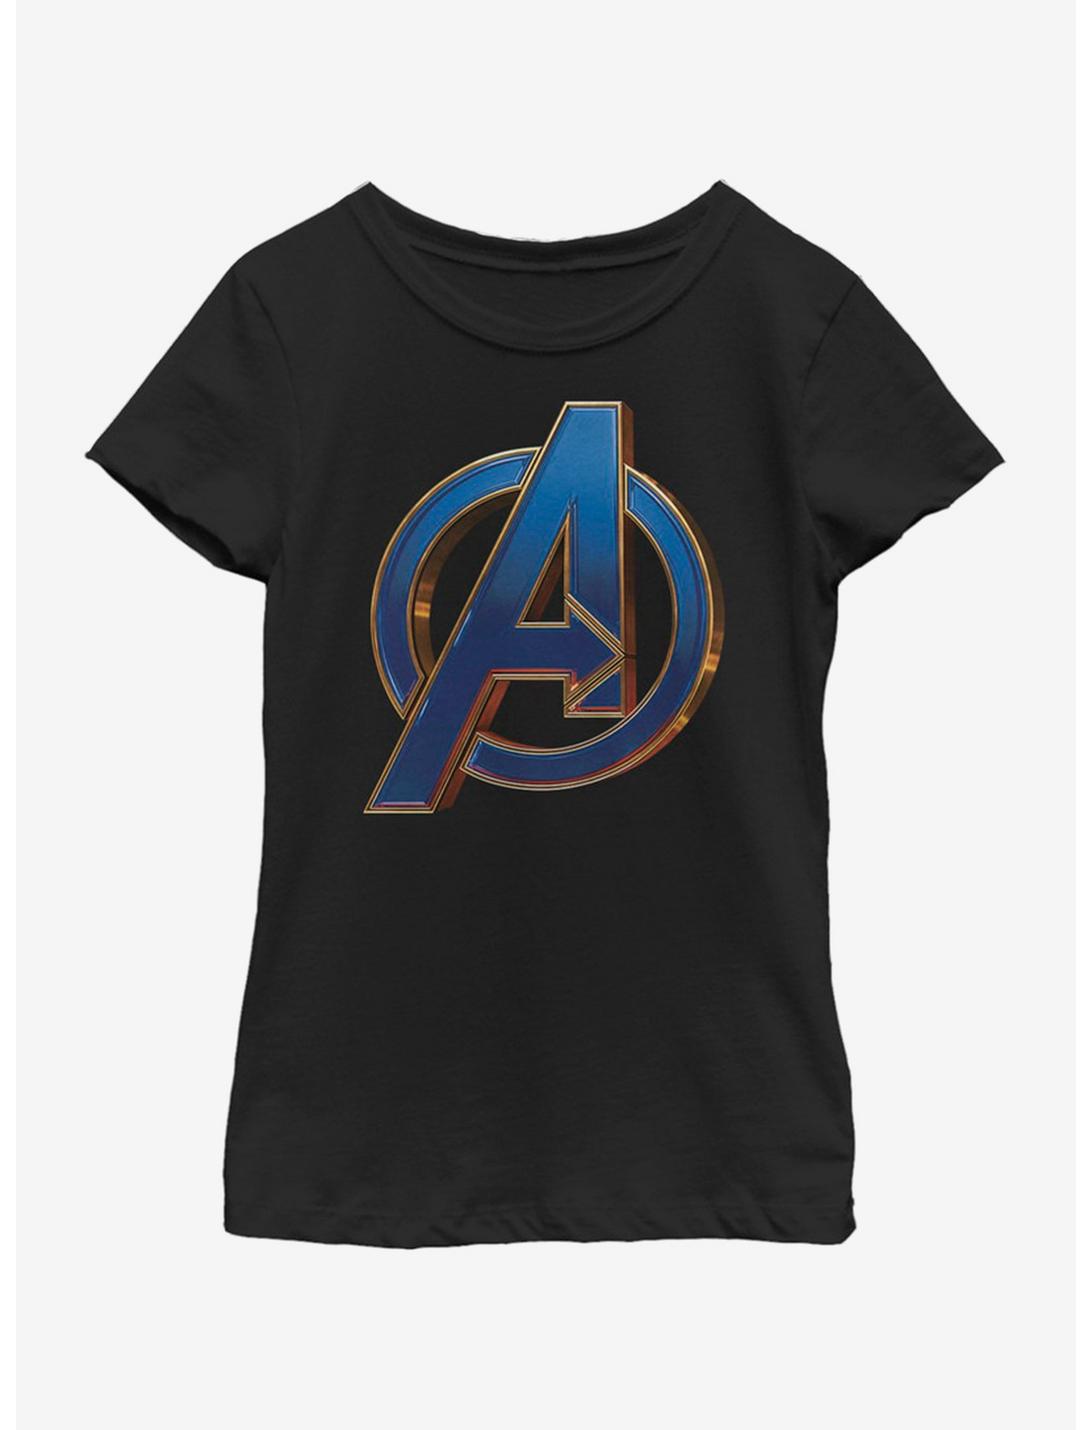 Marvel Avengers: Endgame Blue Logo Youth Girls T-Shirt, BLACK, hi-res